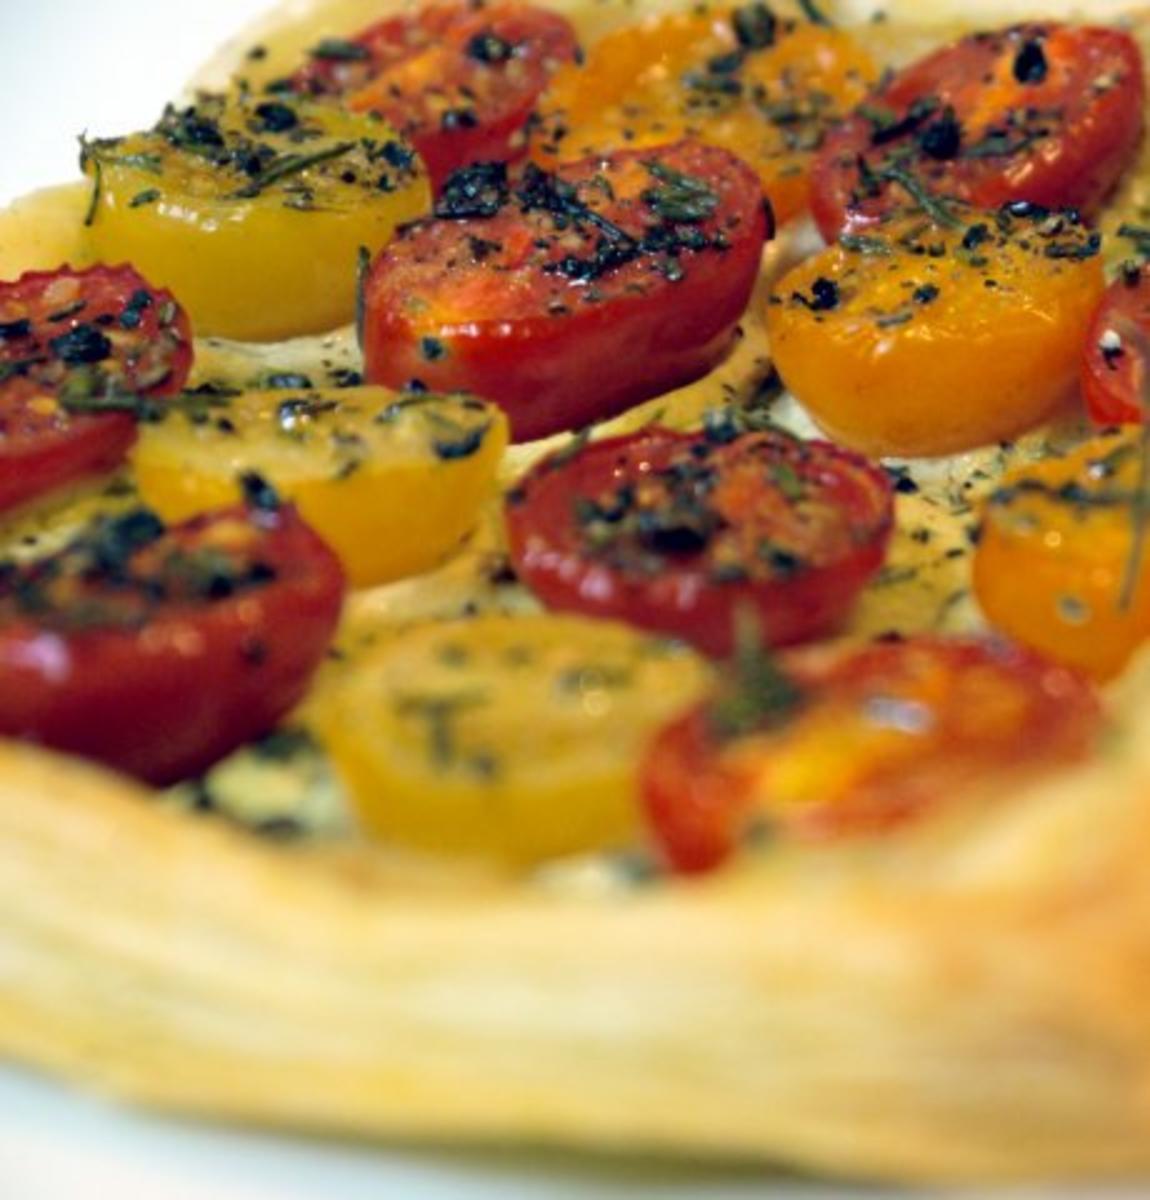 Blätterteigtarte mit bunten Tomaten und Pesto aus confierter Zucchini - Rezept